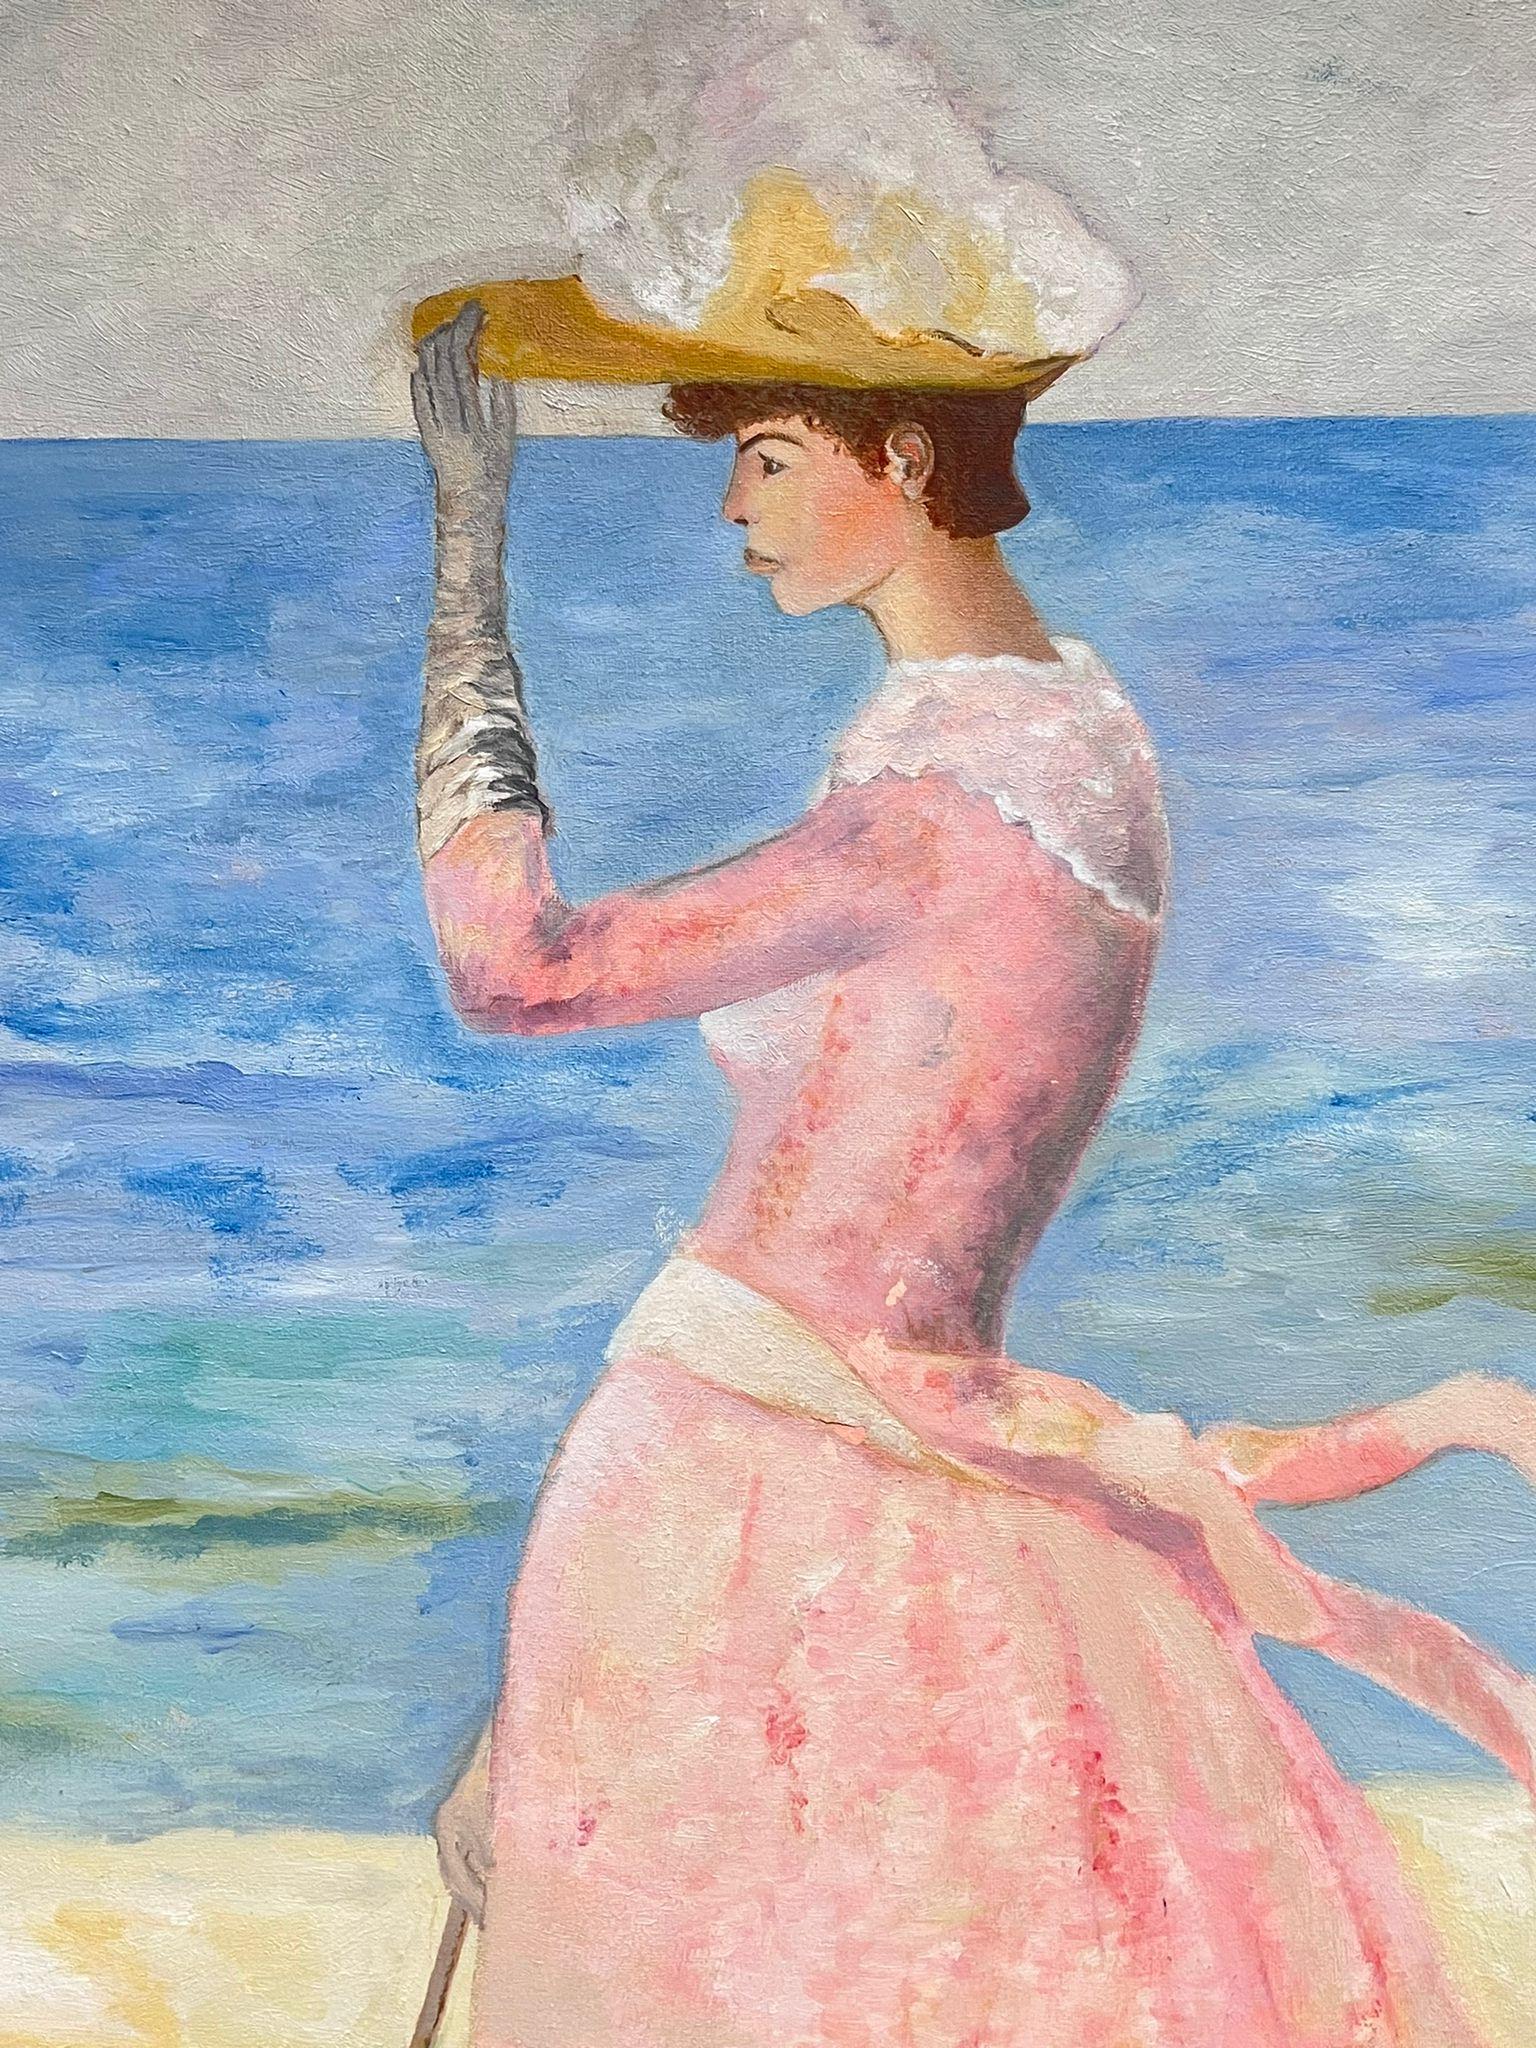 Porträt einer eleganten Dame in Rosa Kleid mit Sonnenschirm von Beach, Original französisches Ölgemälde – Painting von French School 